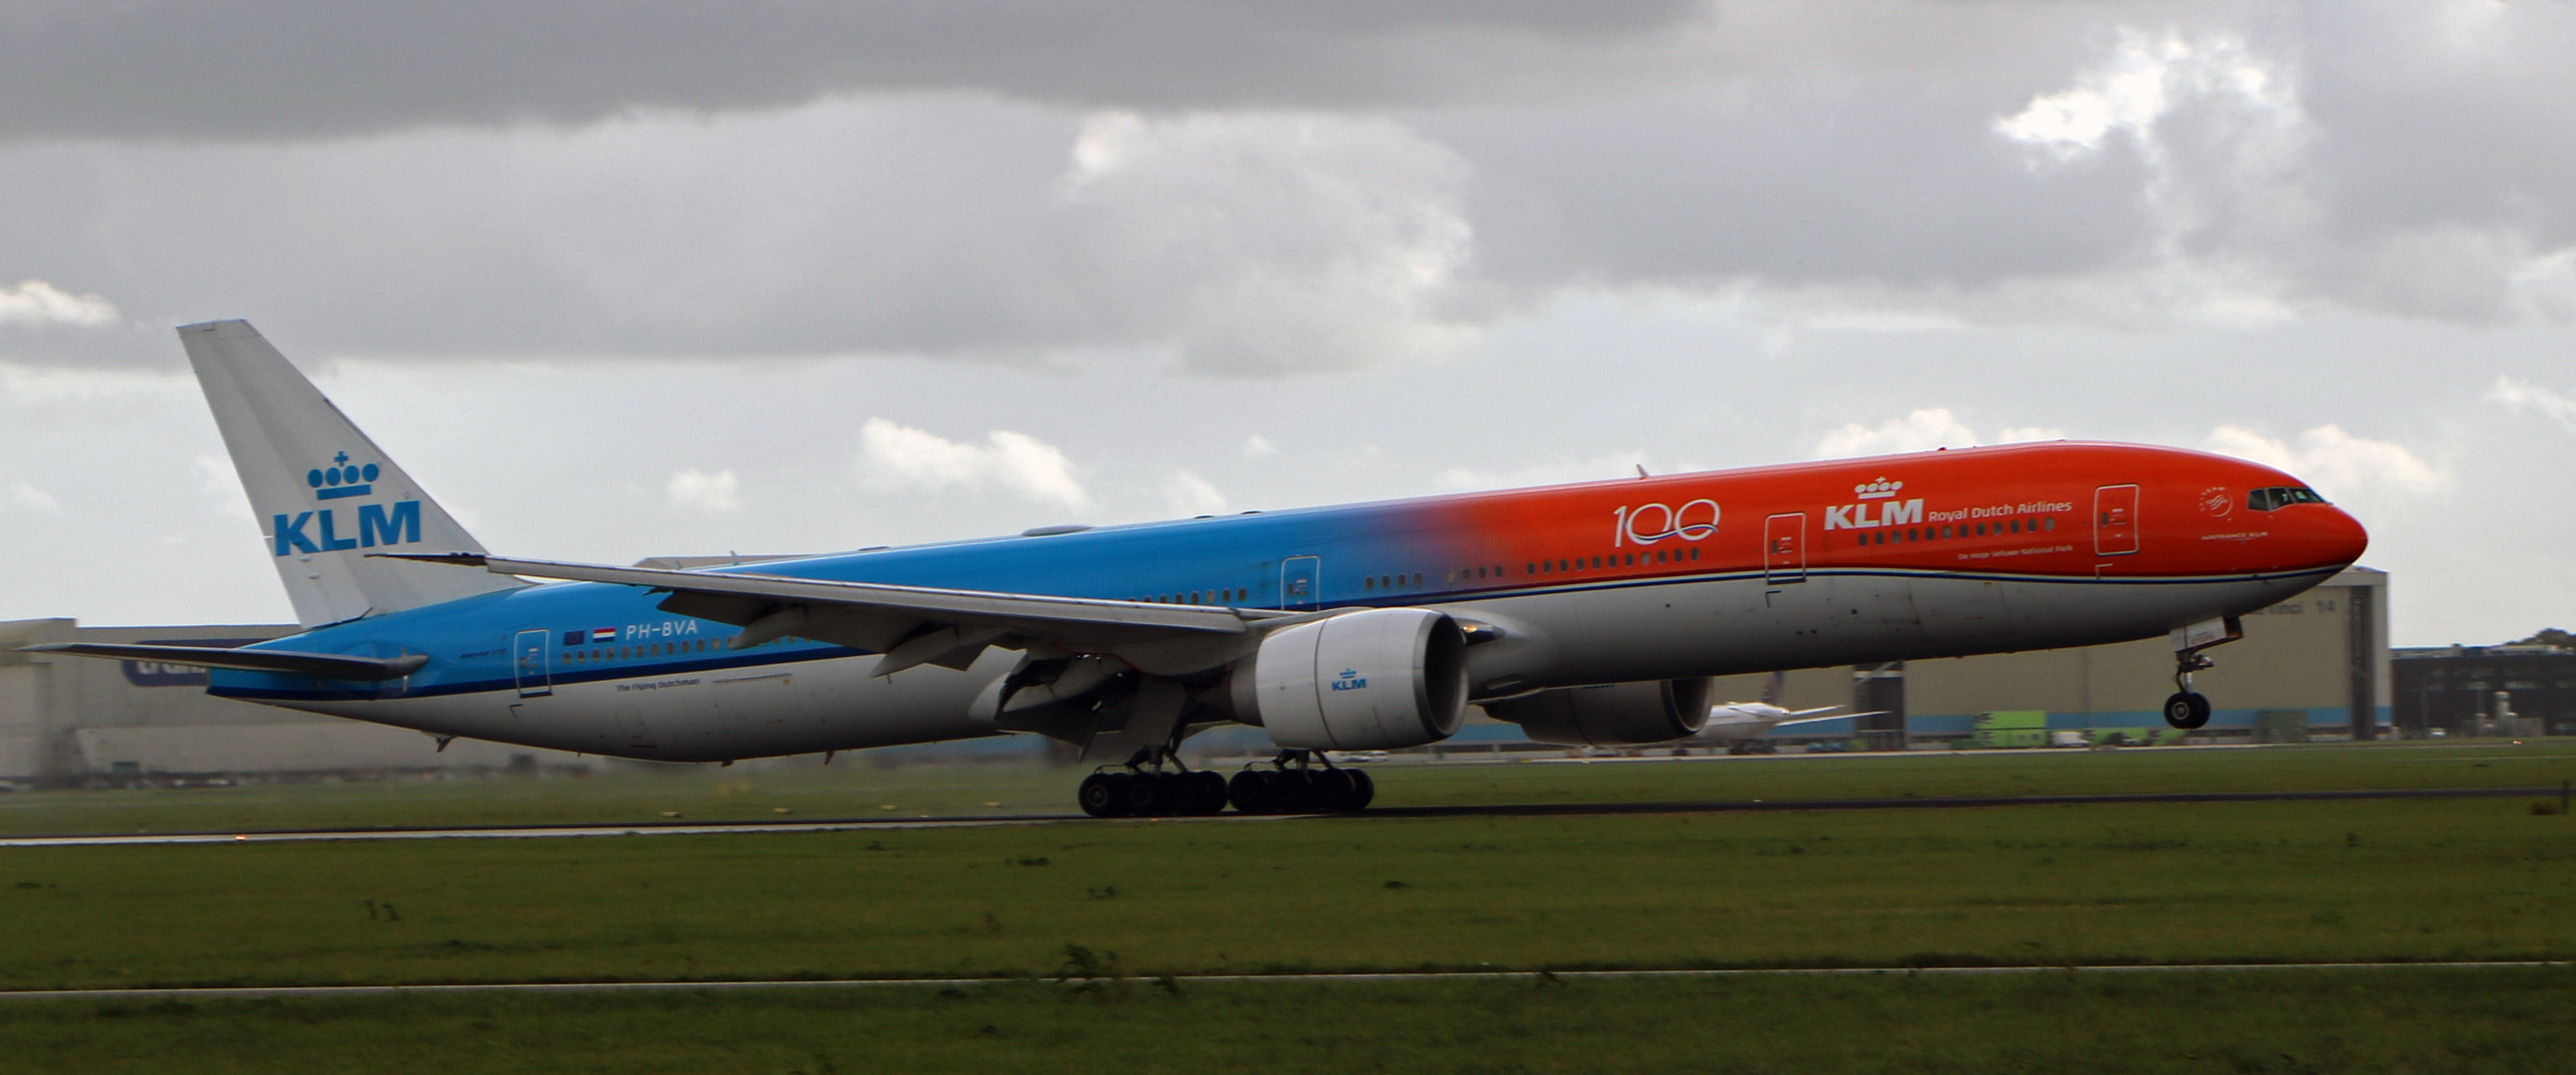 KLM / The Orange Pride